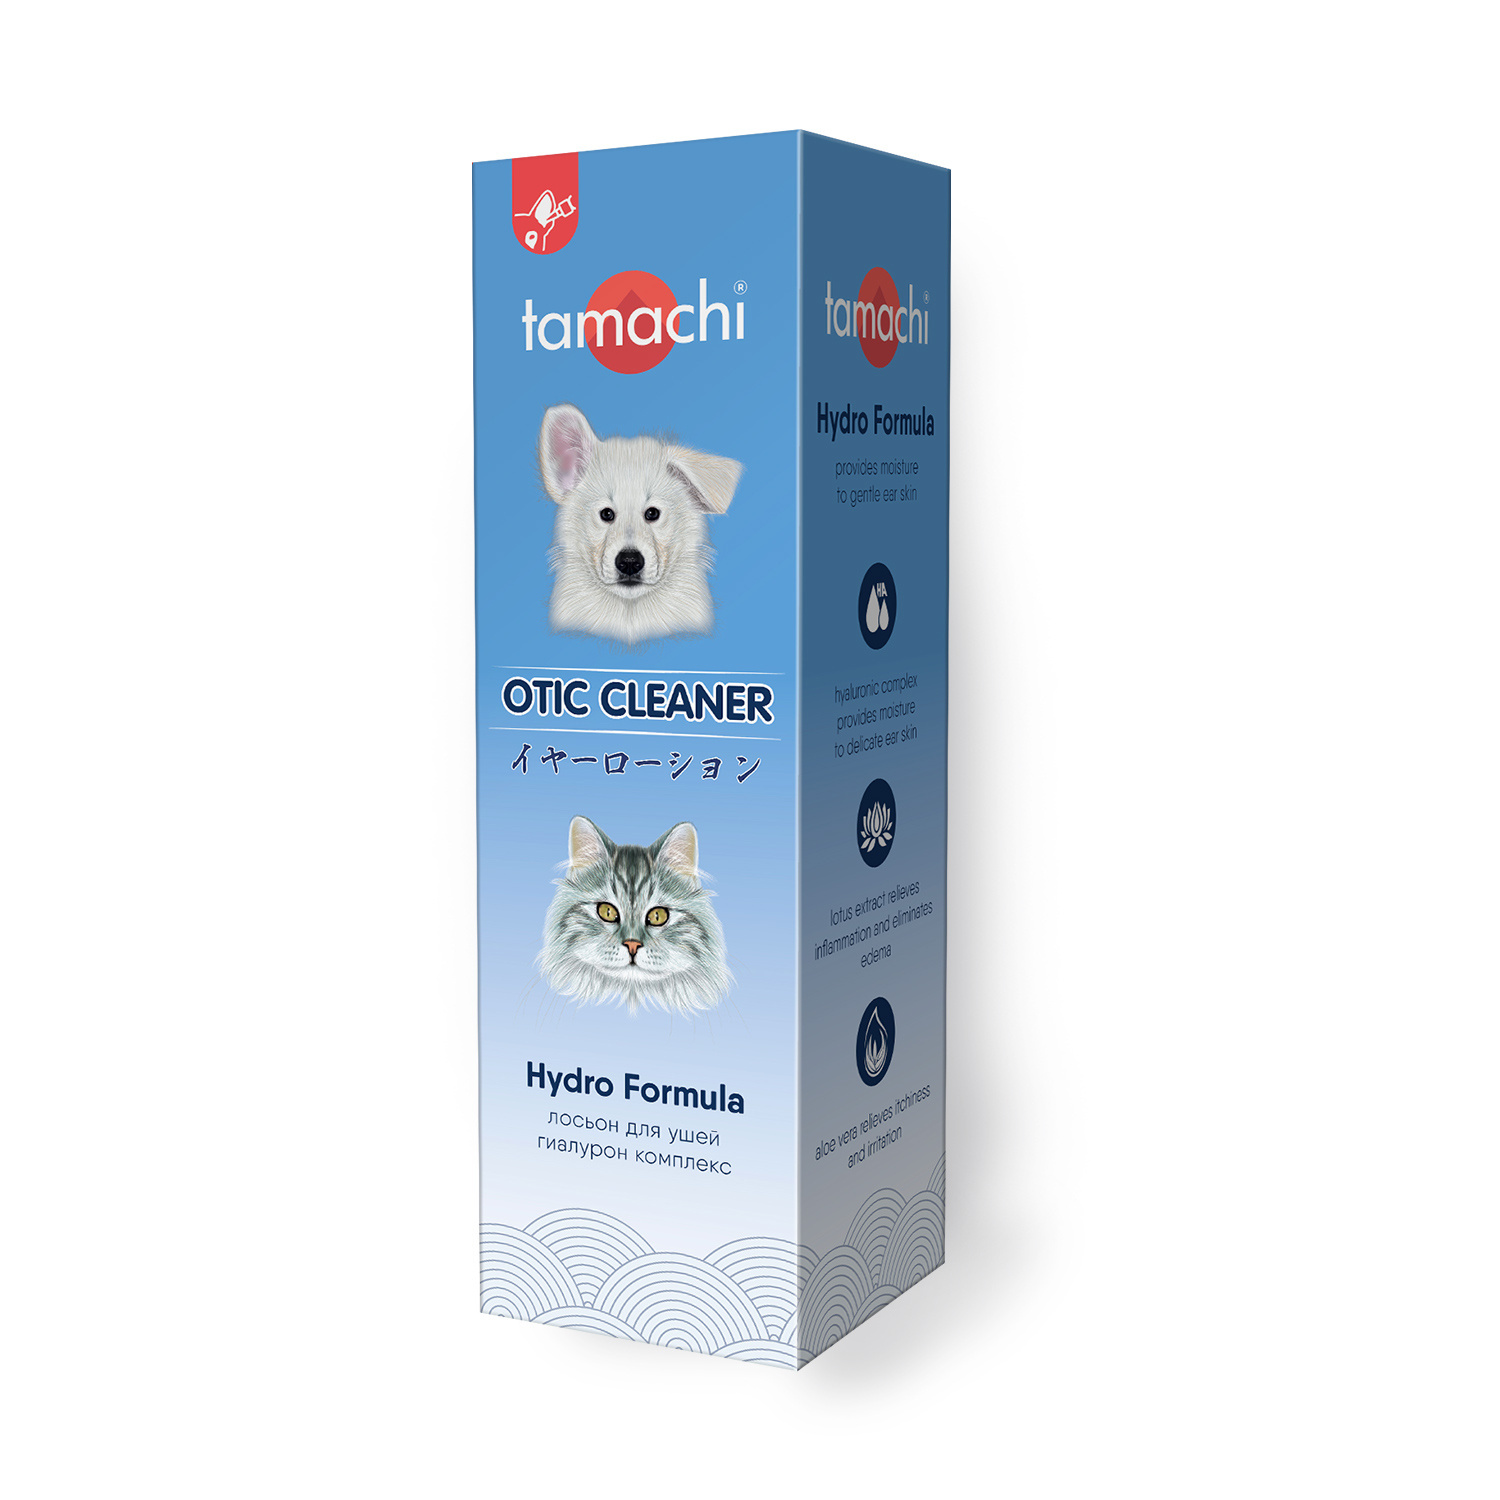 Tamachi Tamachi лосьон для ушей, 110 мл (138 г) tamachi tamachi жидкость для полости рта 100 мл 132 г